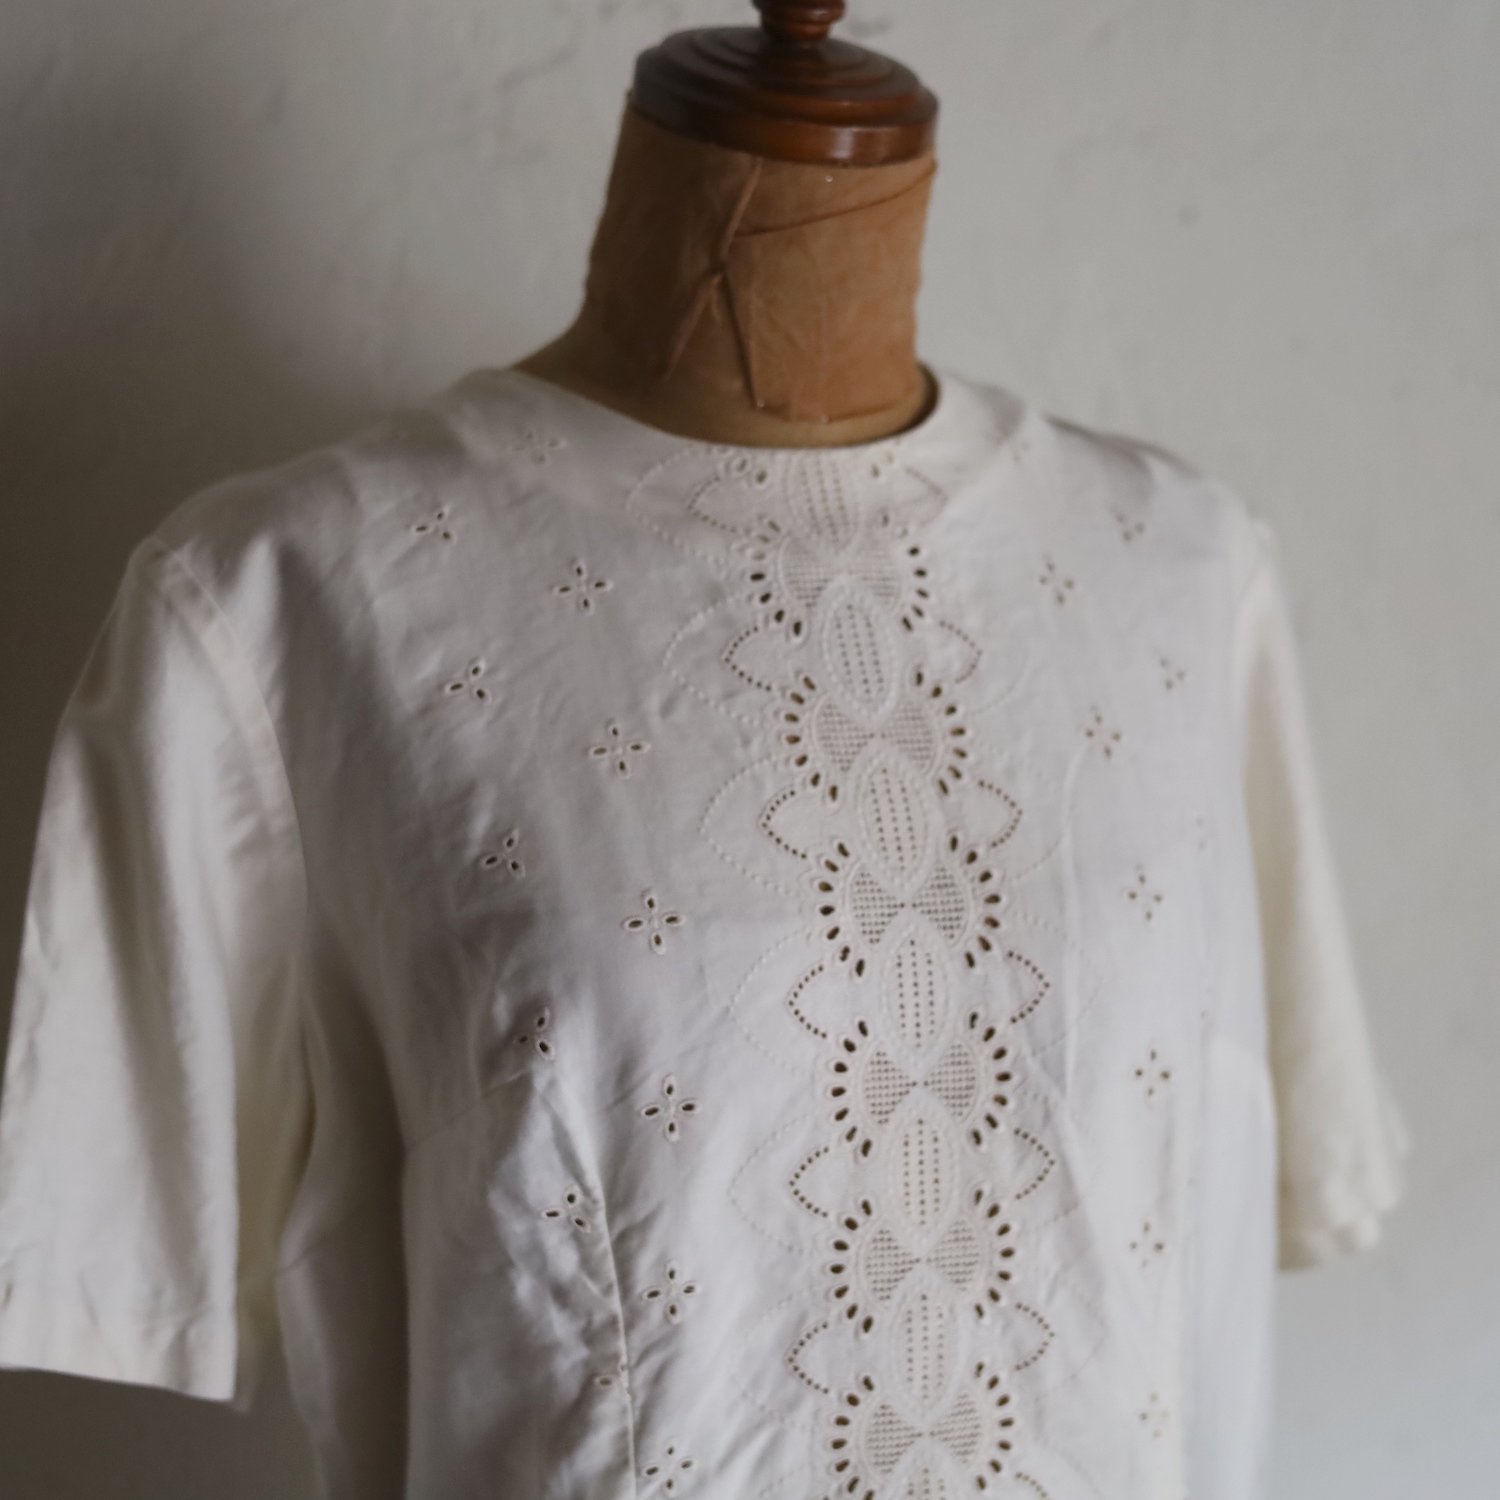 vintage 1960's cotton blouse / クリーム色のコットンレースブラウス - caikot